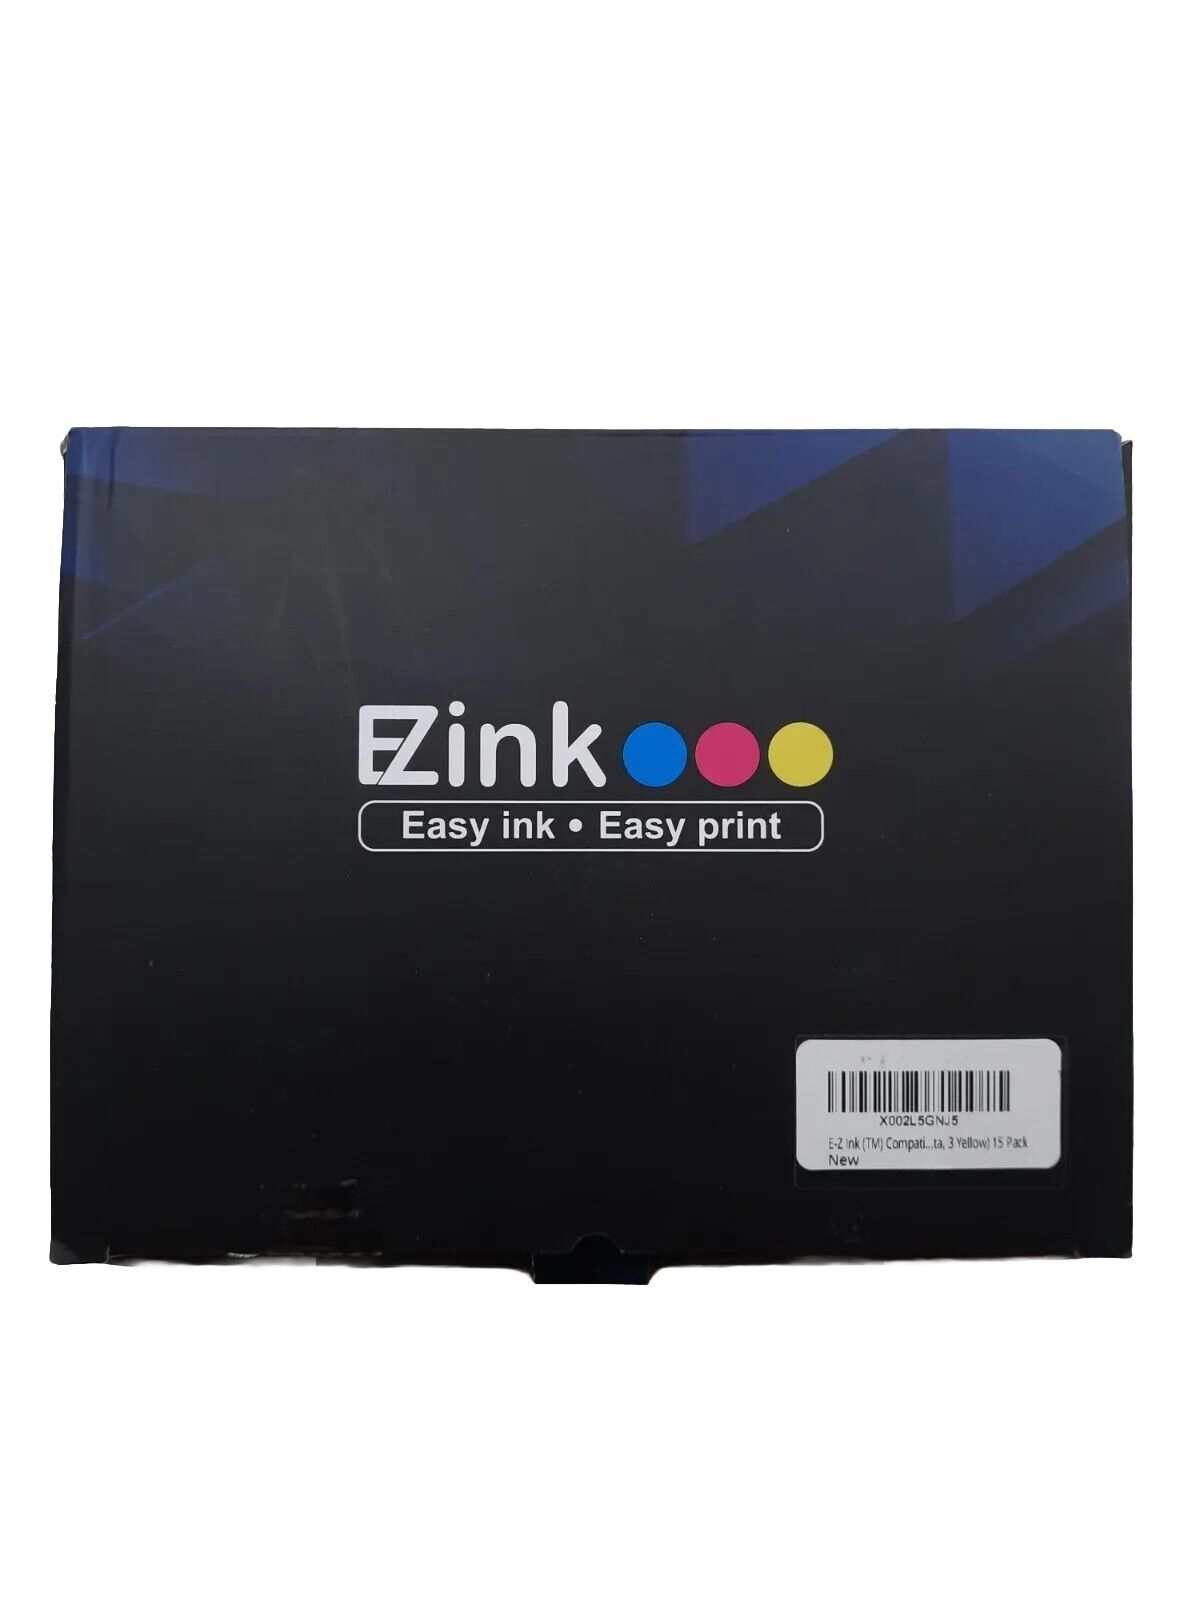 EZINK Easy easy printer ink Multipack 15 - MFC-J450DW MFC-J470DW MFC-J475DW